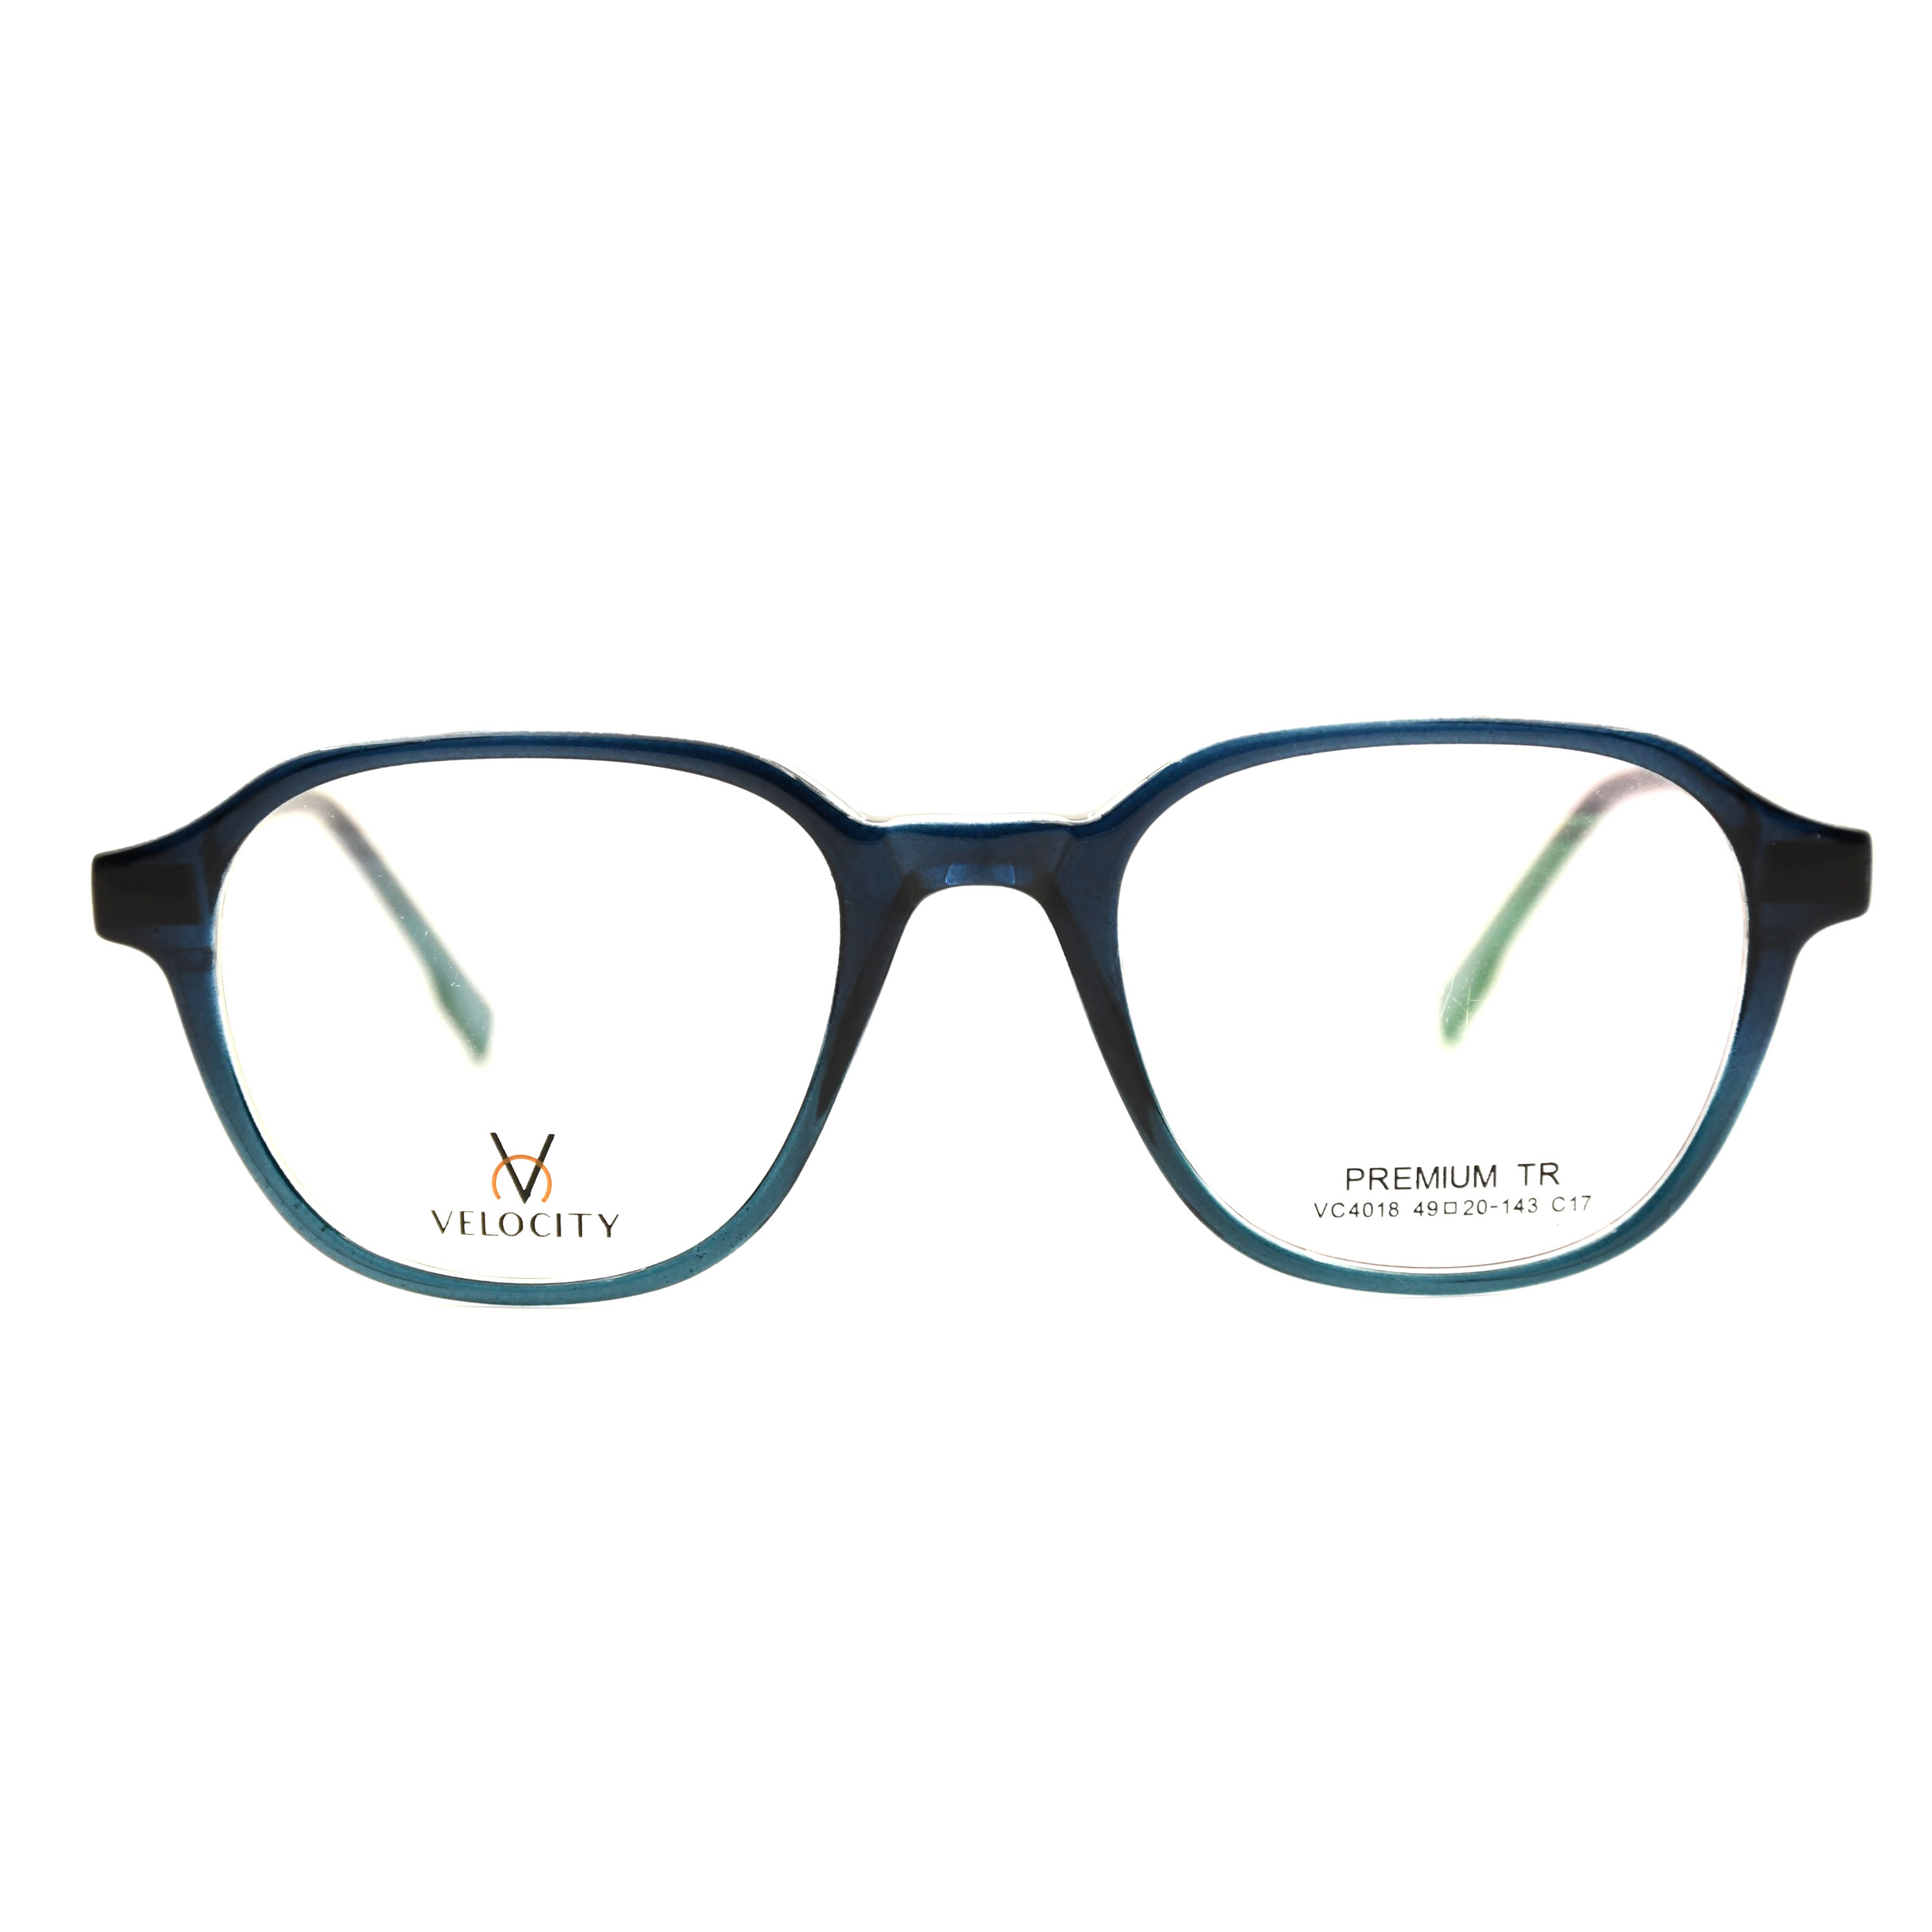 Velocity Rectangle Full Rim Eyeglasses - 4018-C17